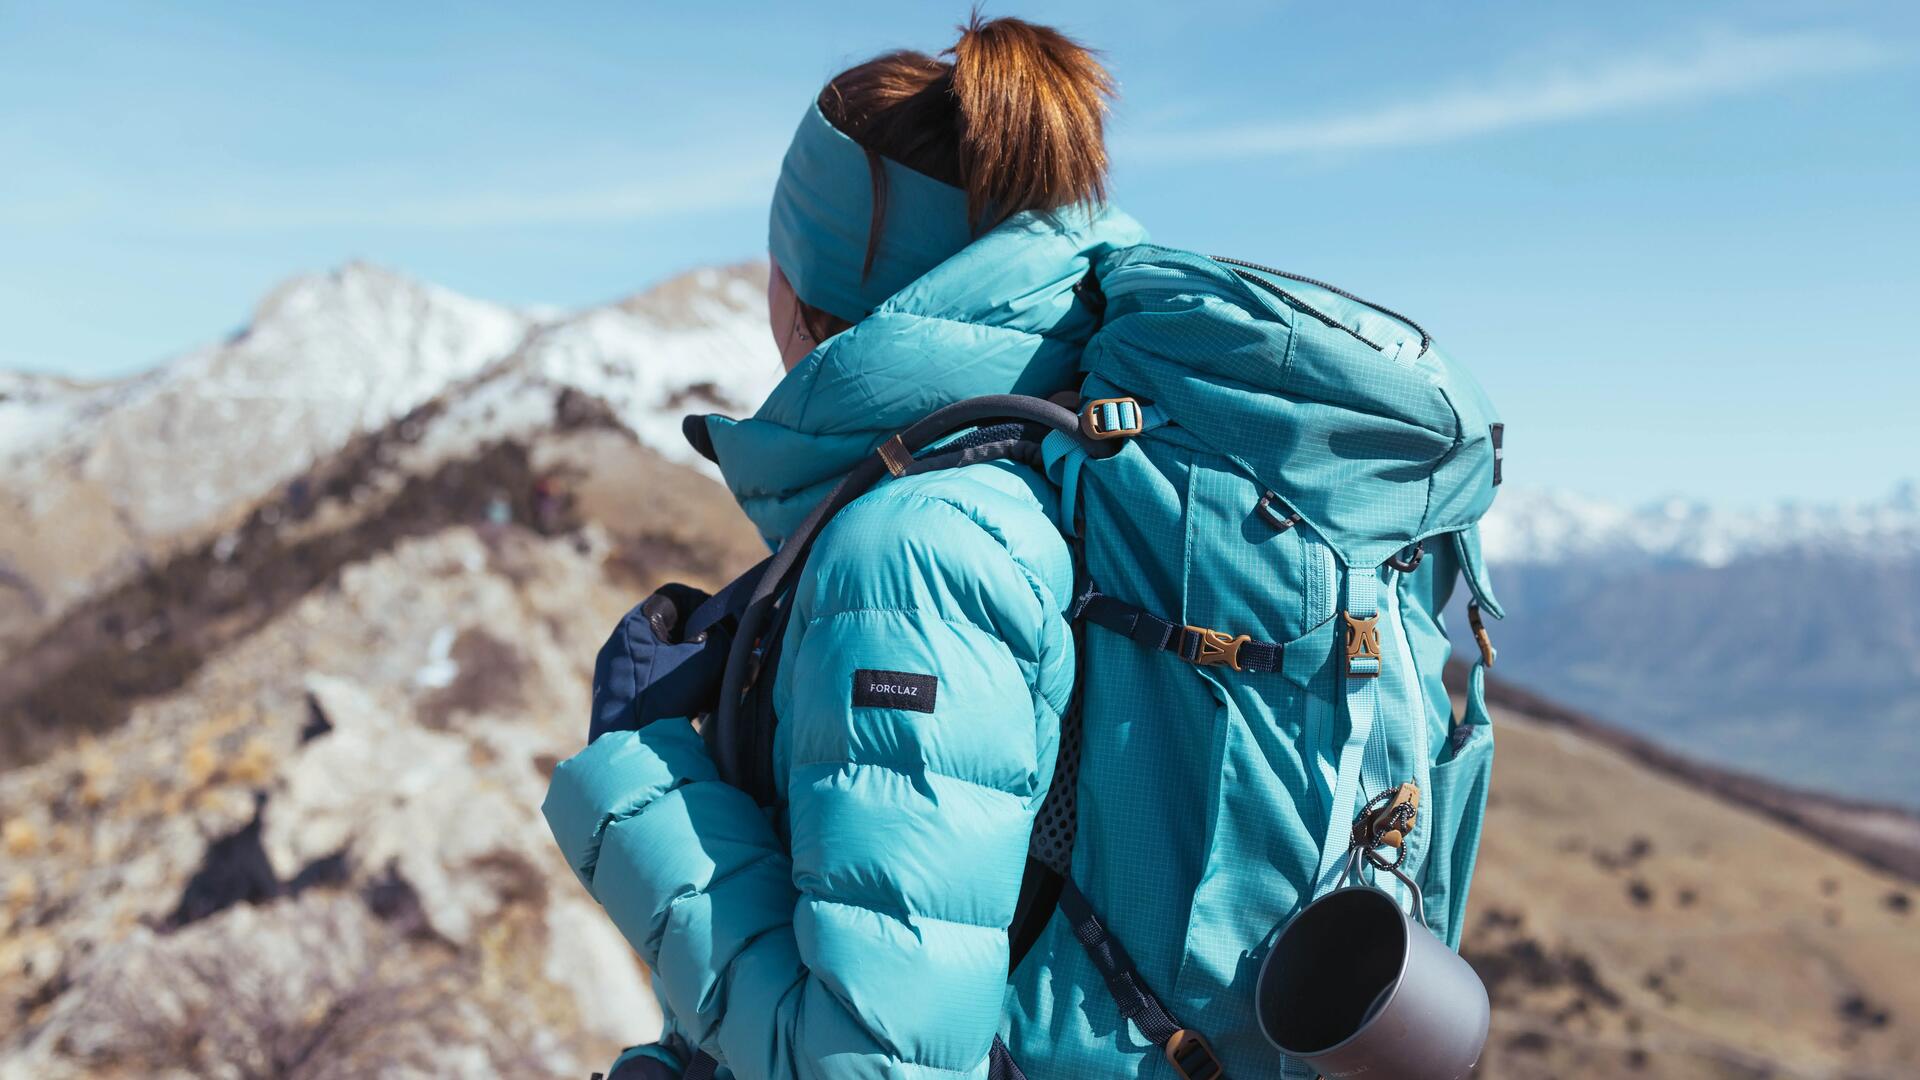 kobieta stojąca w górach w kurtce turystycznej z plecakiem turystycznym na plecach 